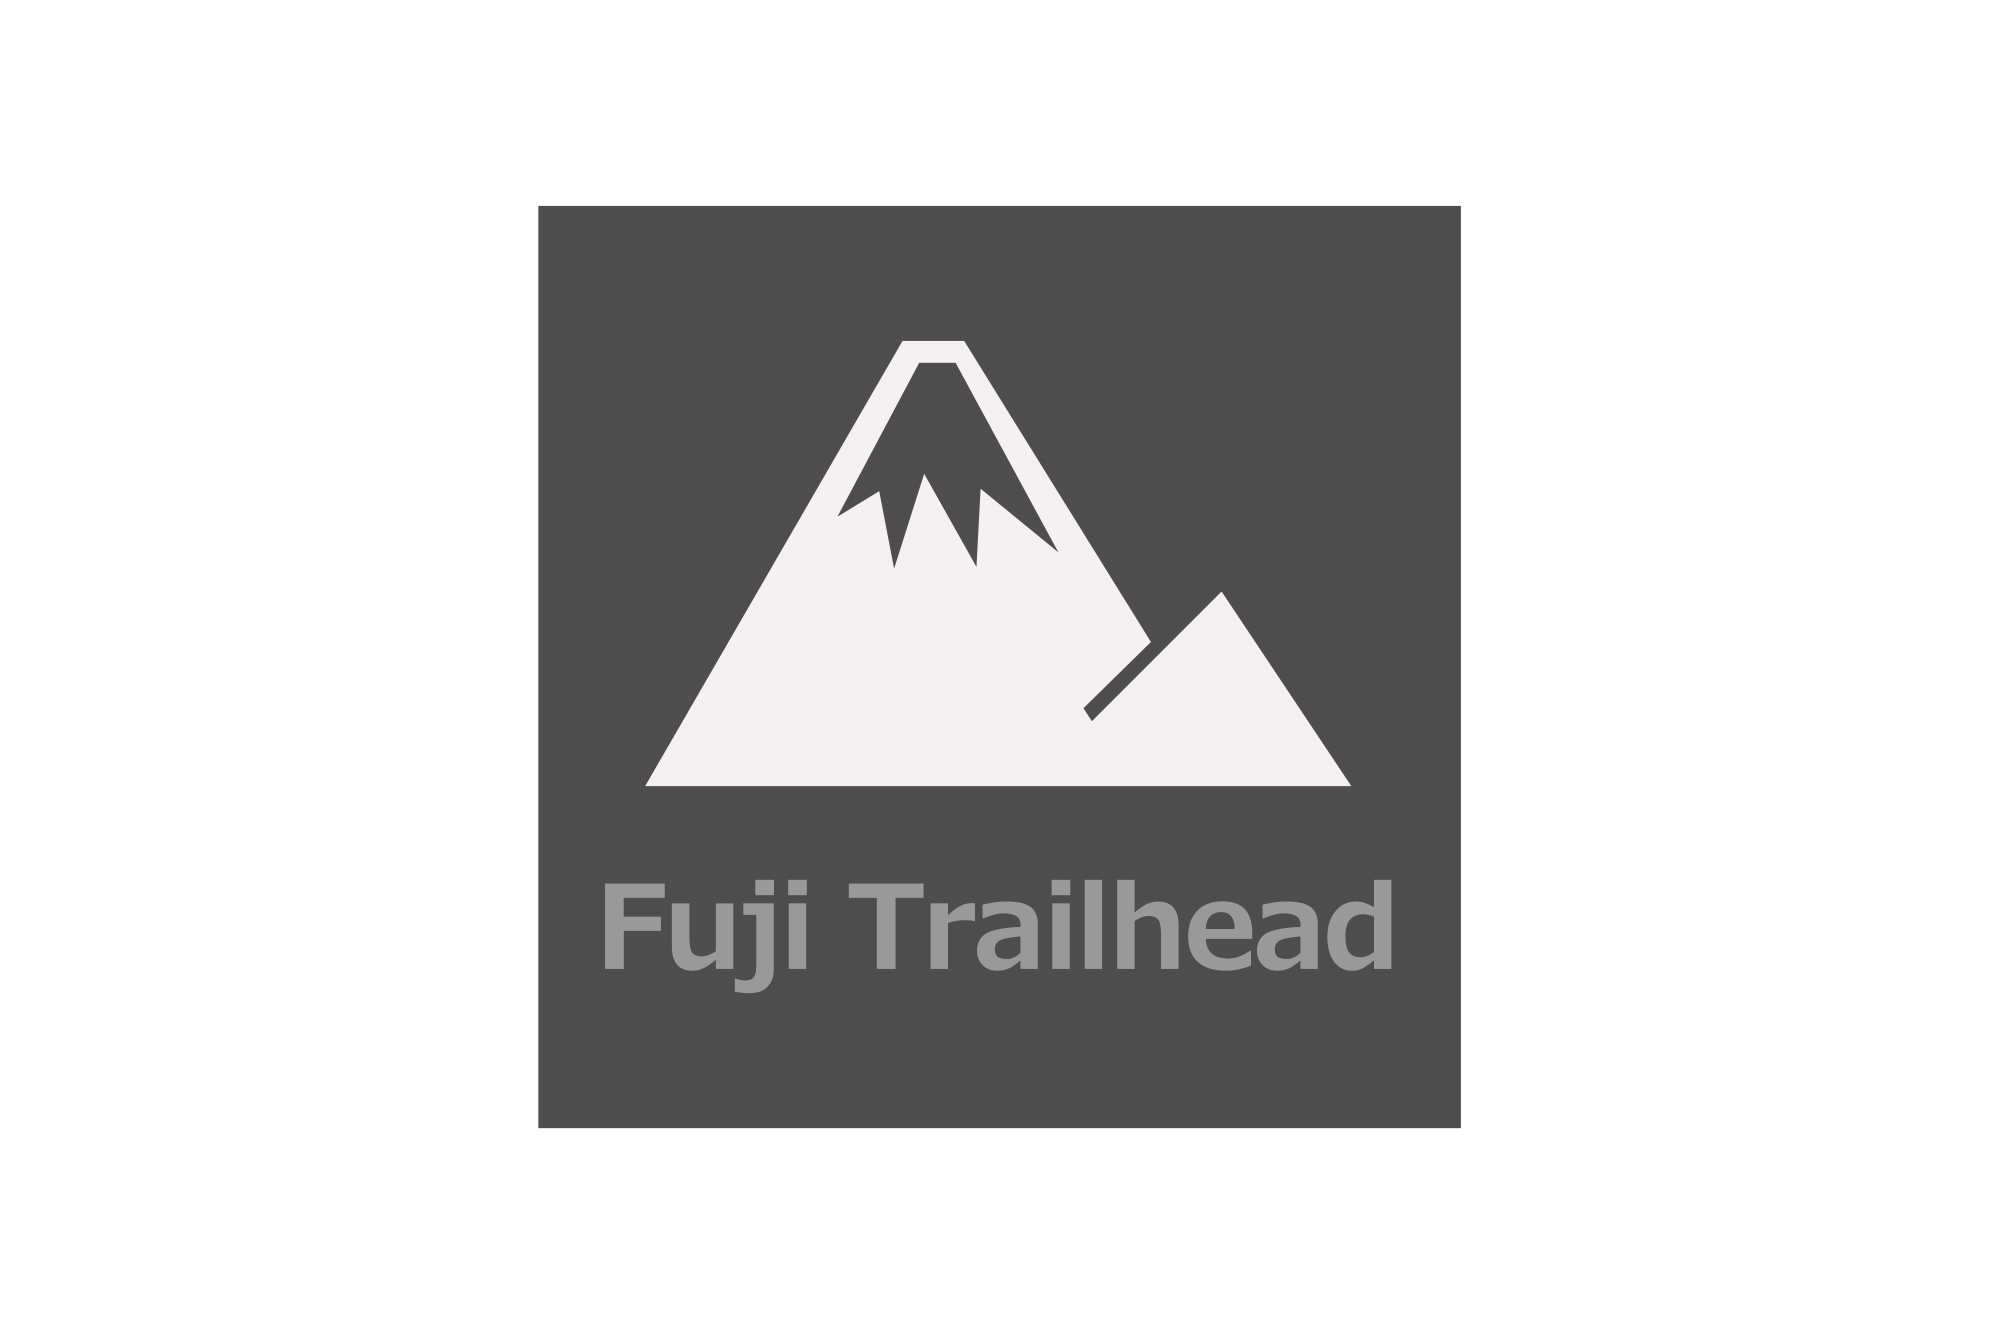 Fuji Trailhead